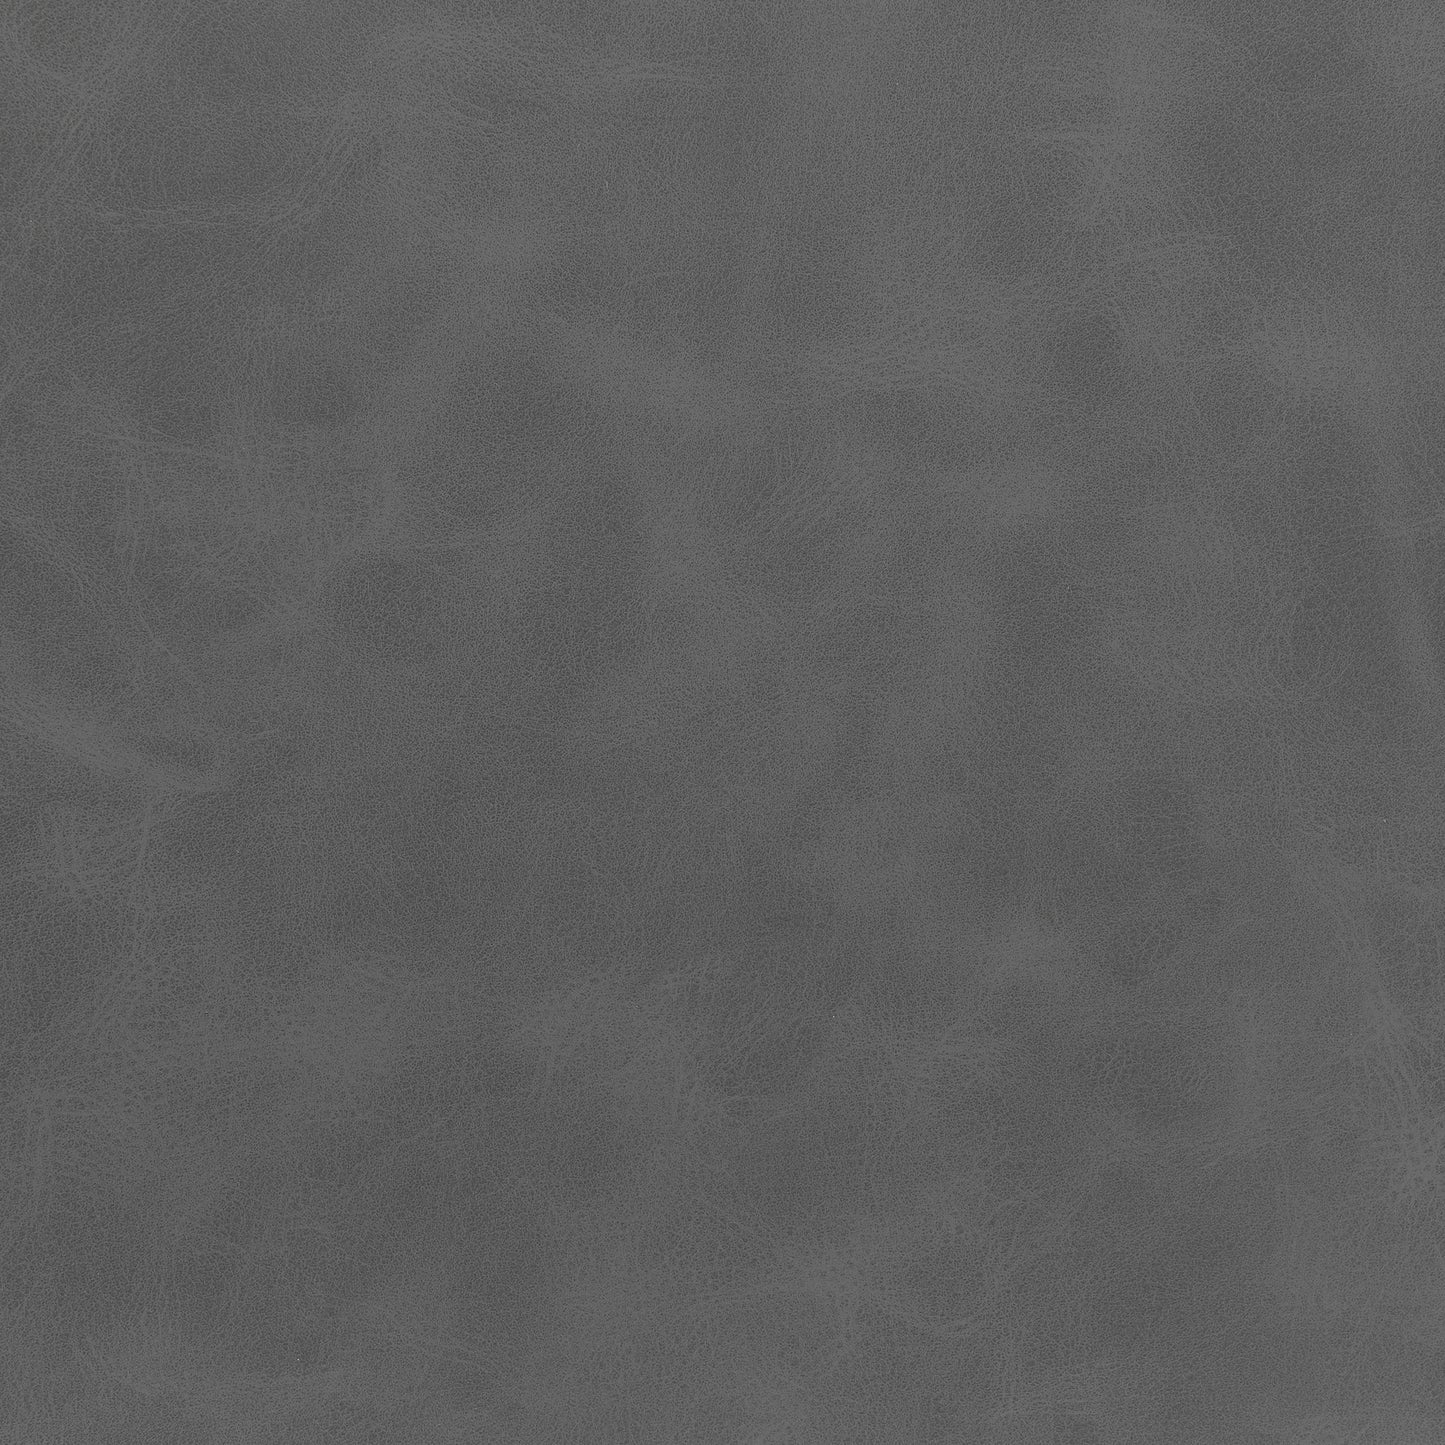 Earnest Solid Back Upholstered Bar Stools Grey and Black (Set of 2)